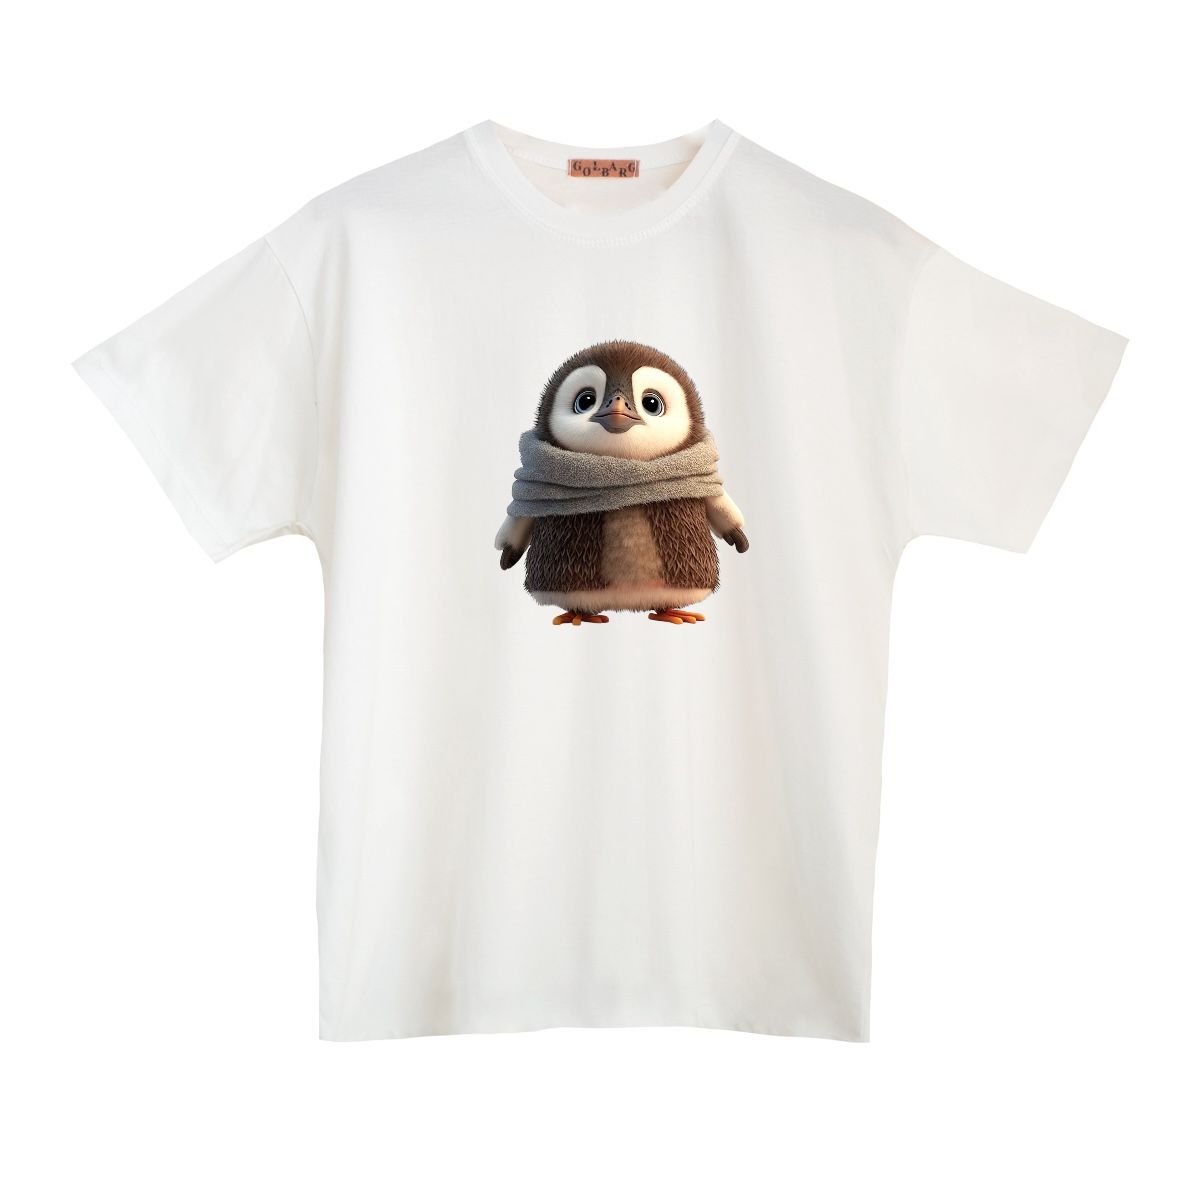 تی شرت بچگانه مدل پنگوئن کد 2 -  - 1